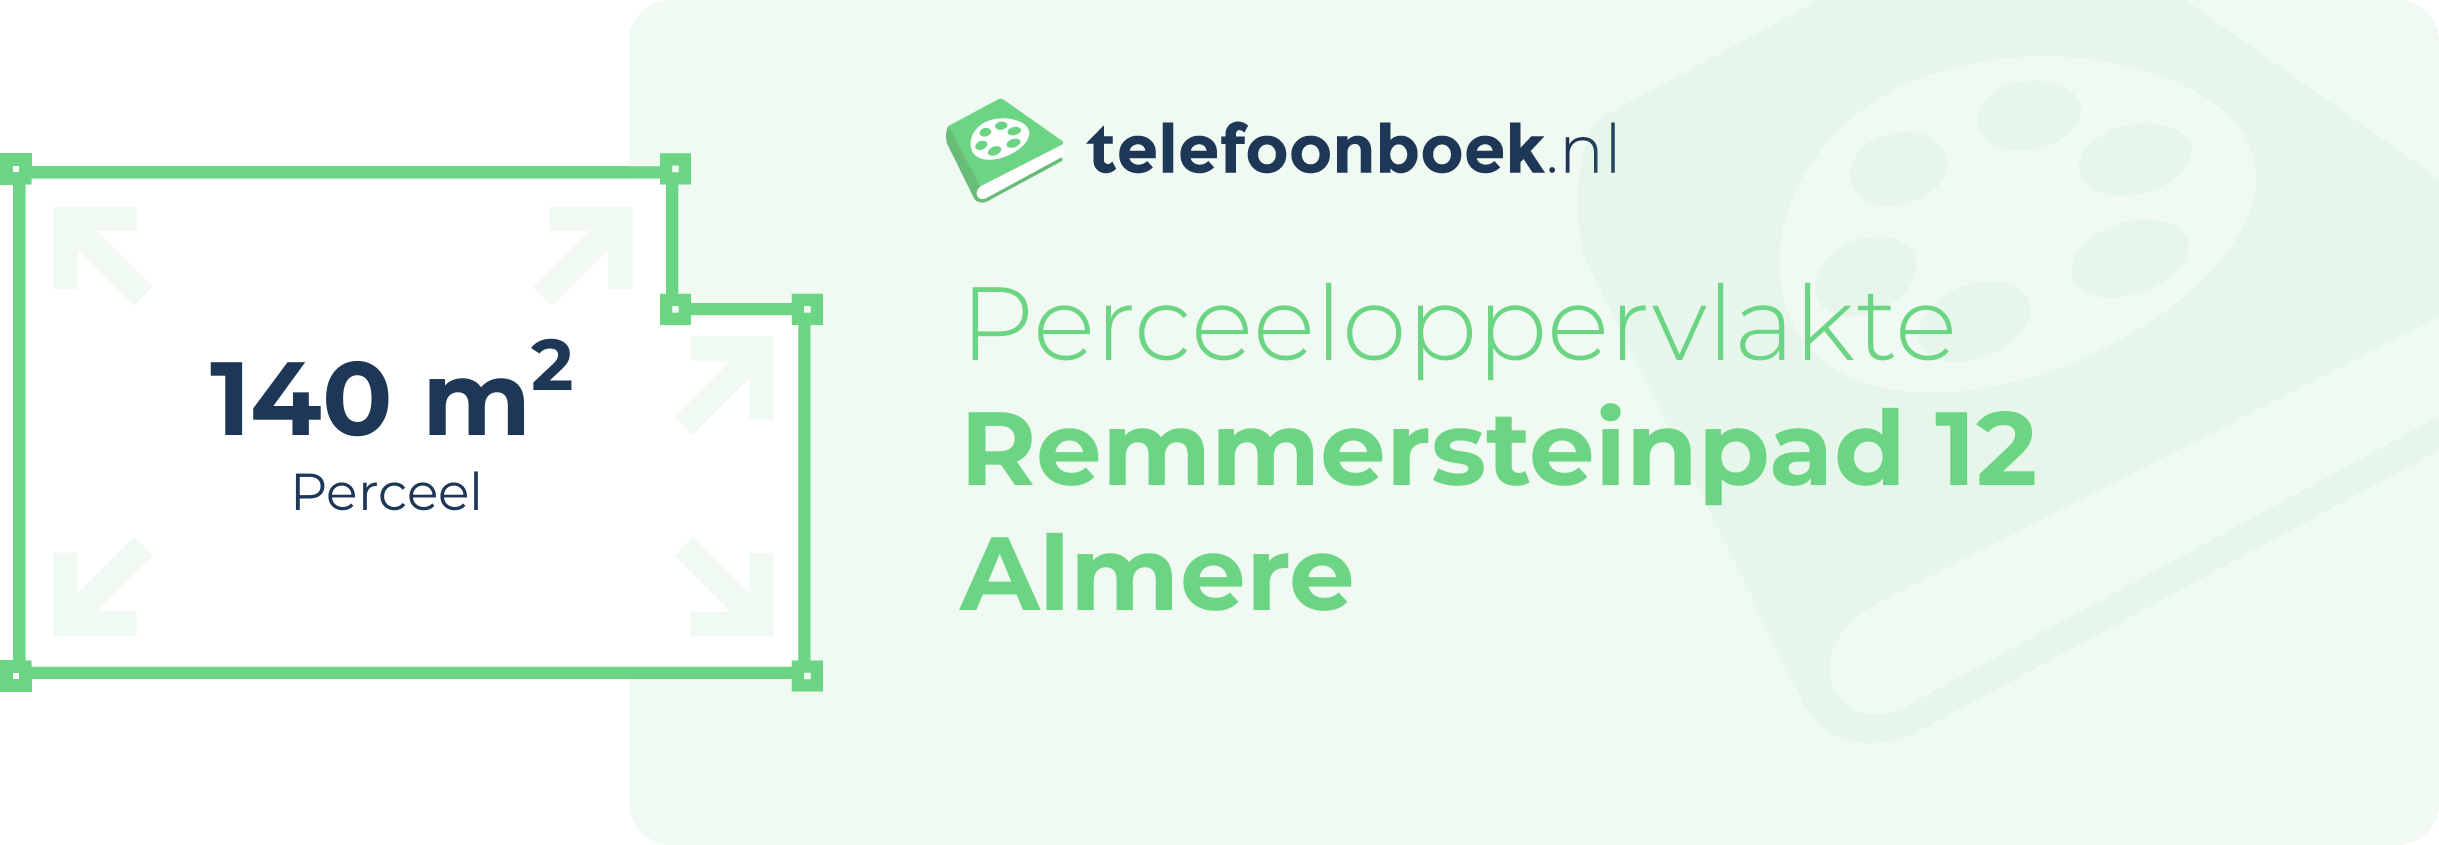 Perceeloppervlakte Remmersteinpad 12 Almere